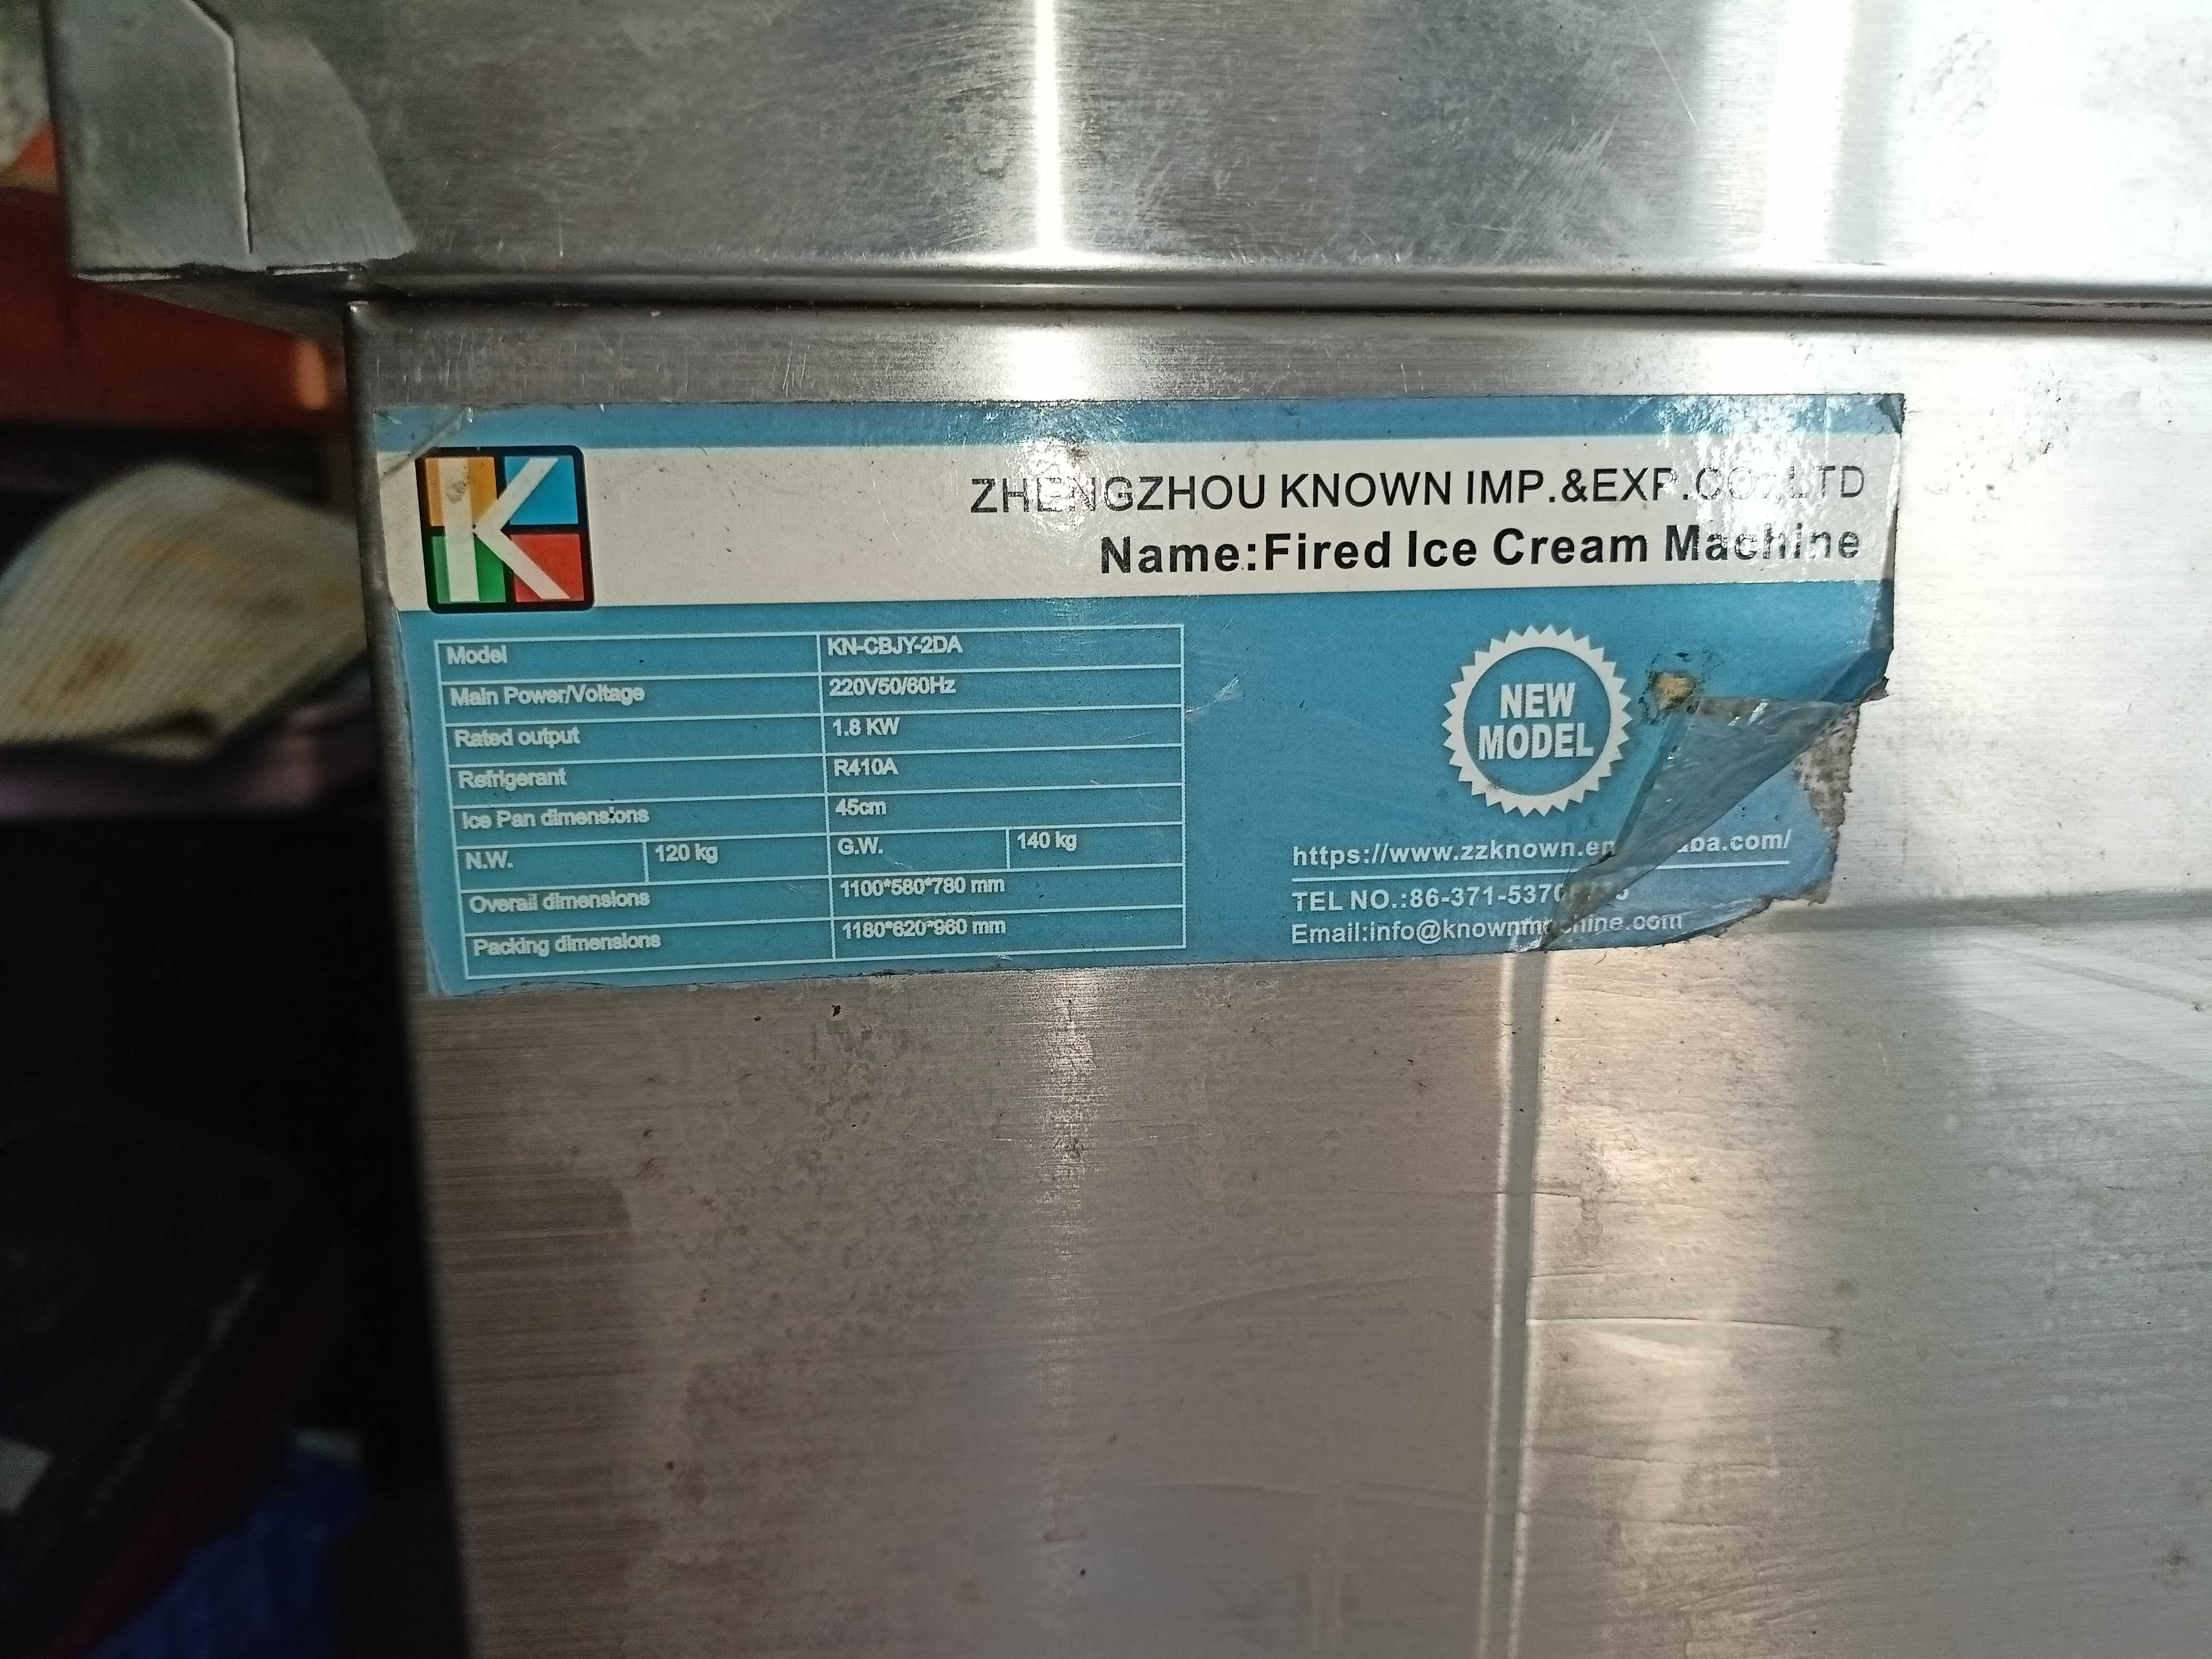 maszyna do lodów tajskich / patelnia do lodów tajskich / fried ice pan